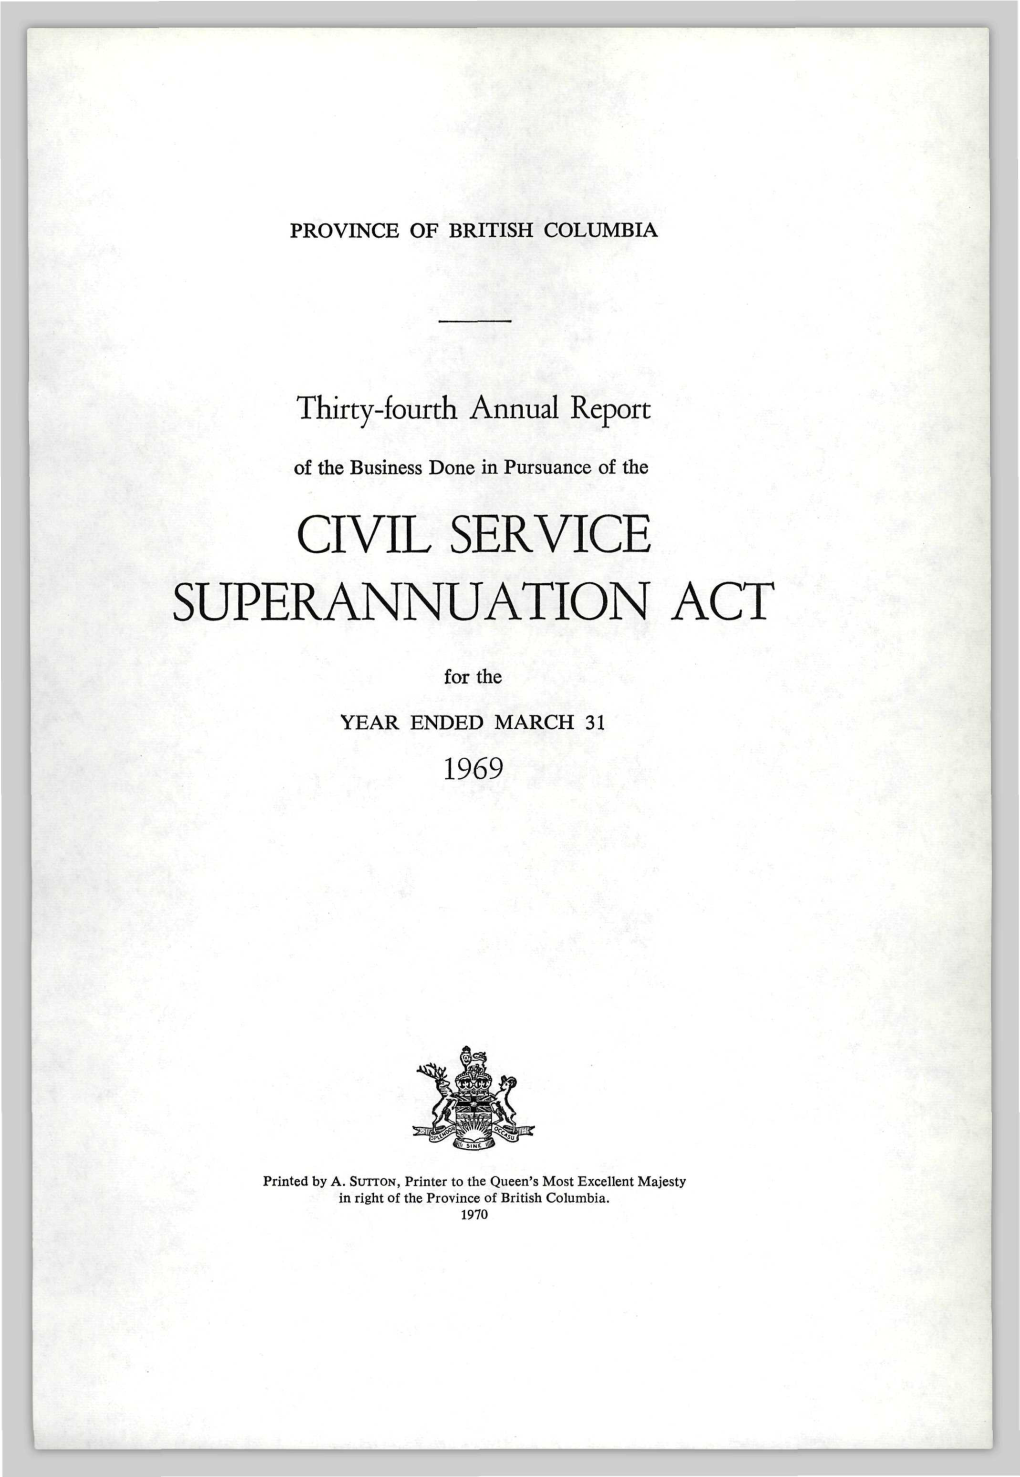 Civil Service Superannuation Act